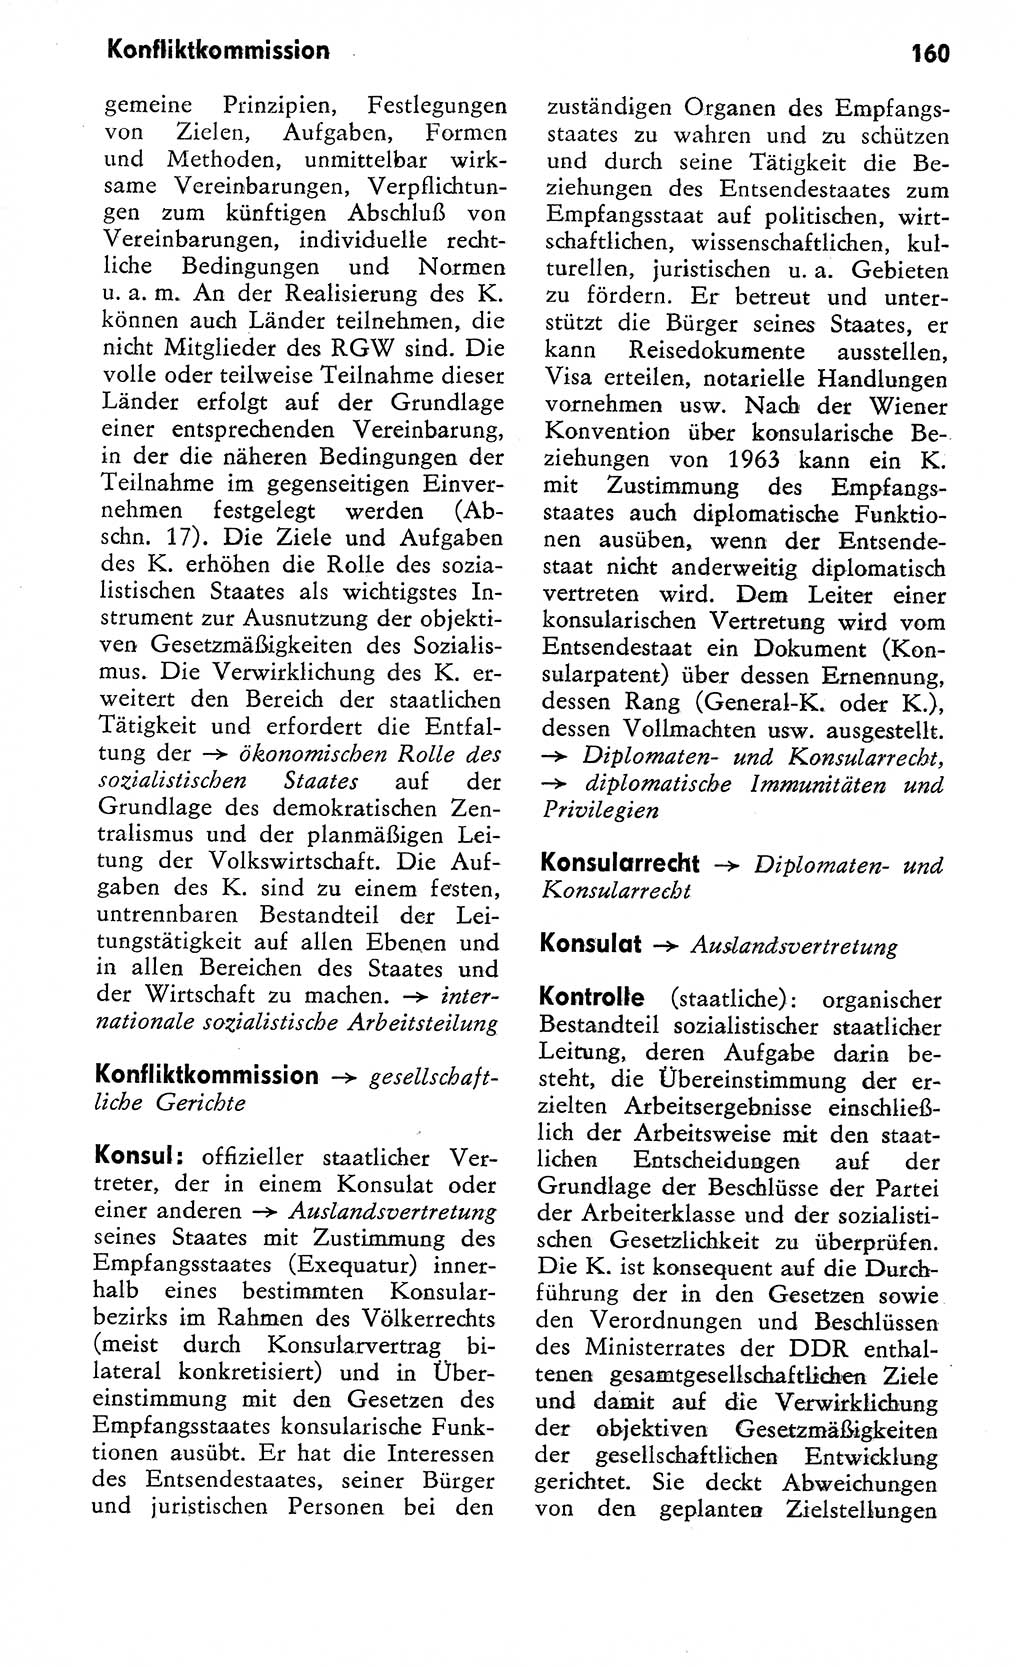 Wörterbuch zum sozialistischen Staat [Deutsche Demokratische Republik (DDR)] 1974, Seite 160 (Wb. soz. St. DDR 1974, S. 160)